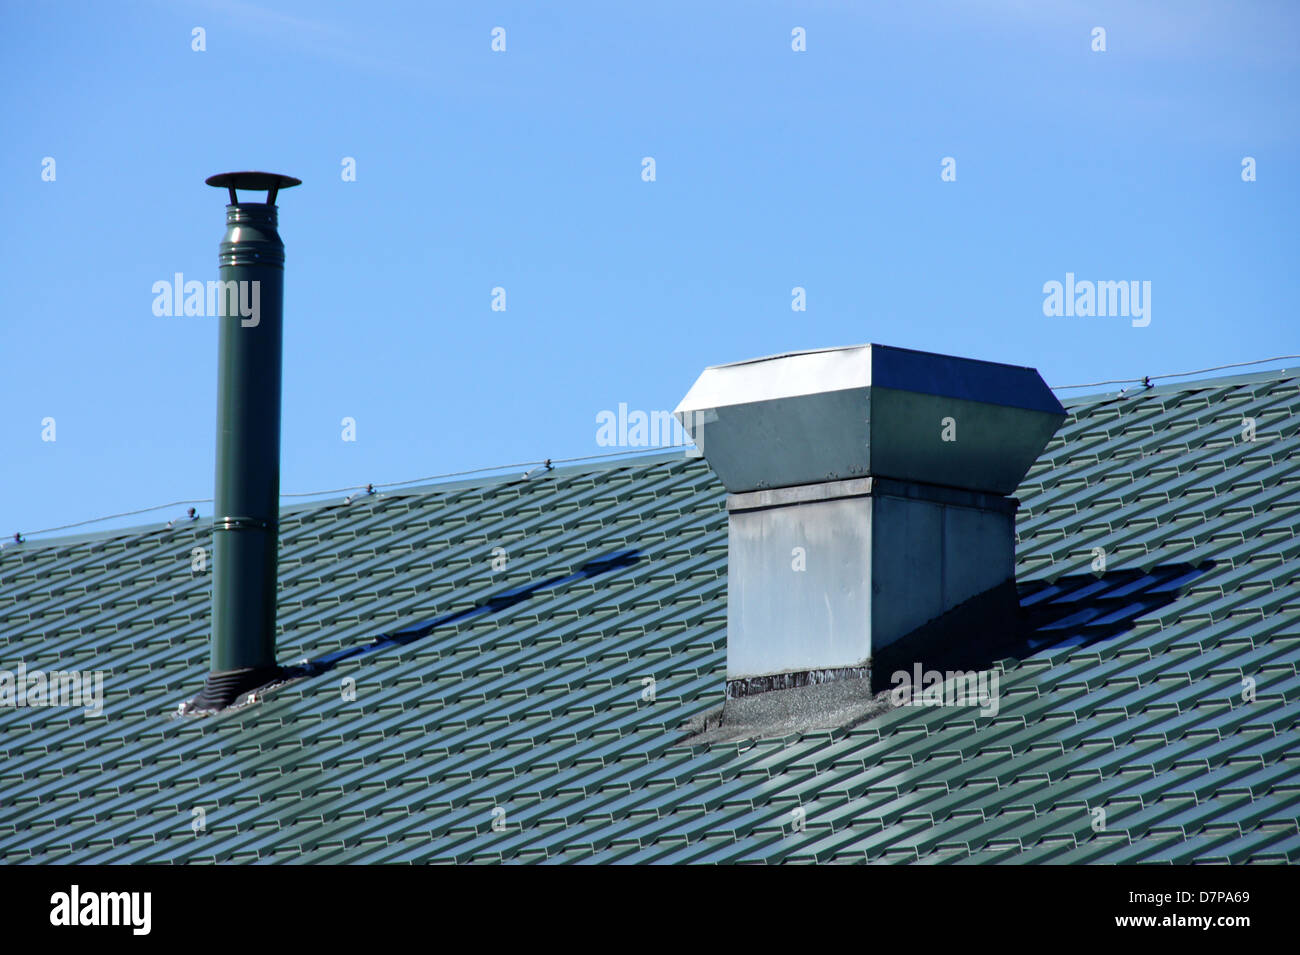 Respiraderos del techo fotografías e imágenes de alta resolución - Alamy